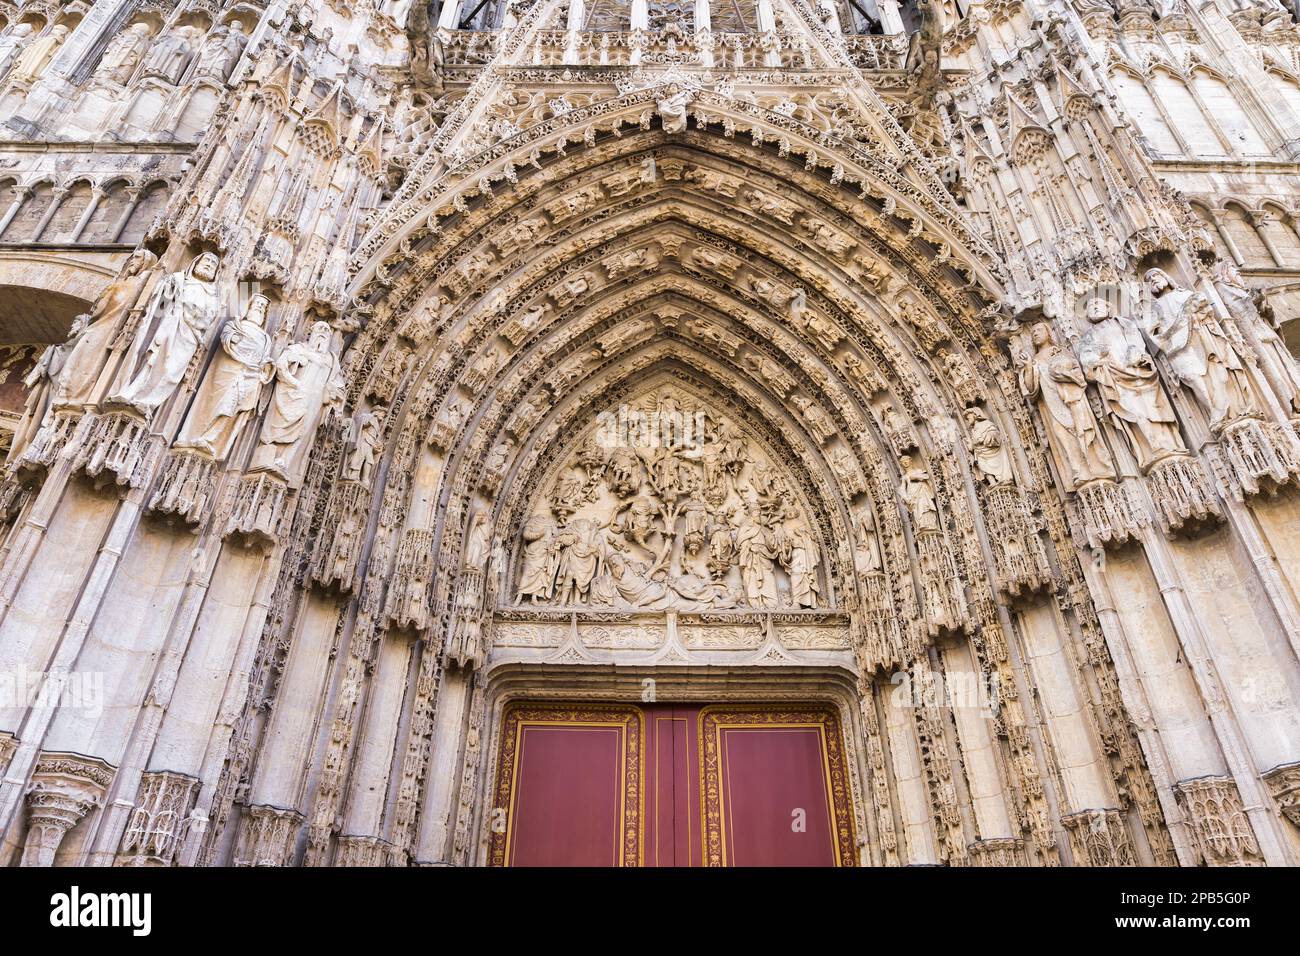 Photo du portail principal de la Cathédrale de Rouen à Rouen, France Banque D'Images